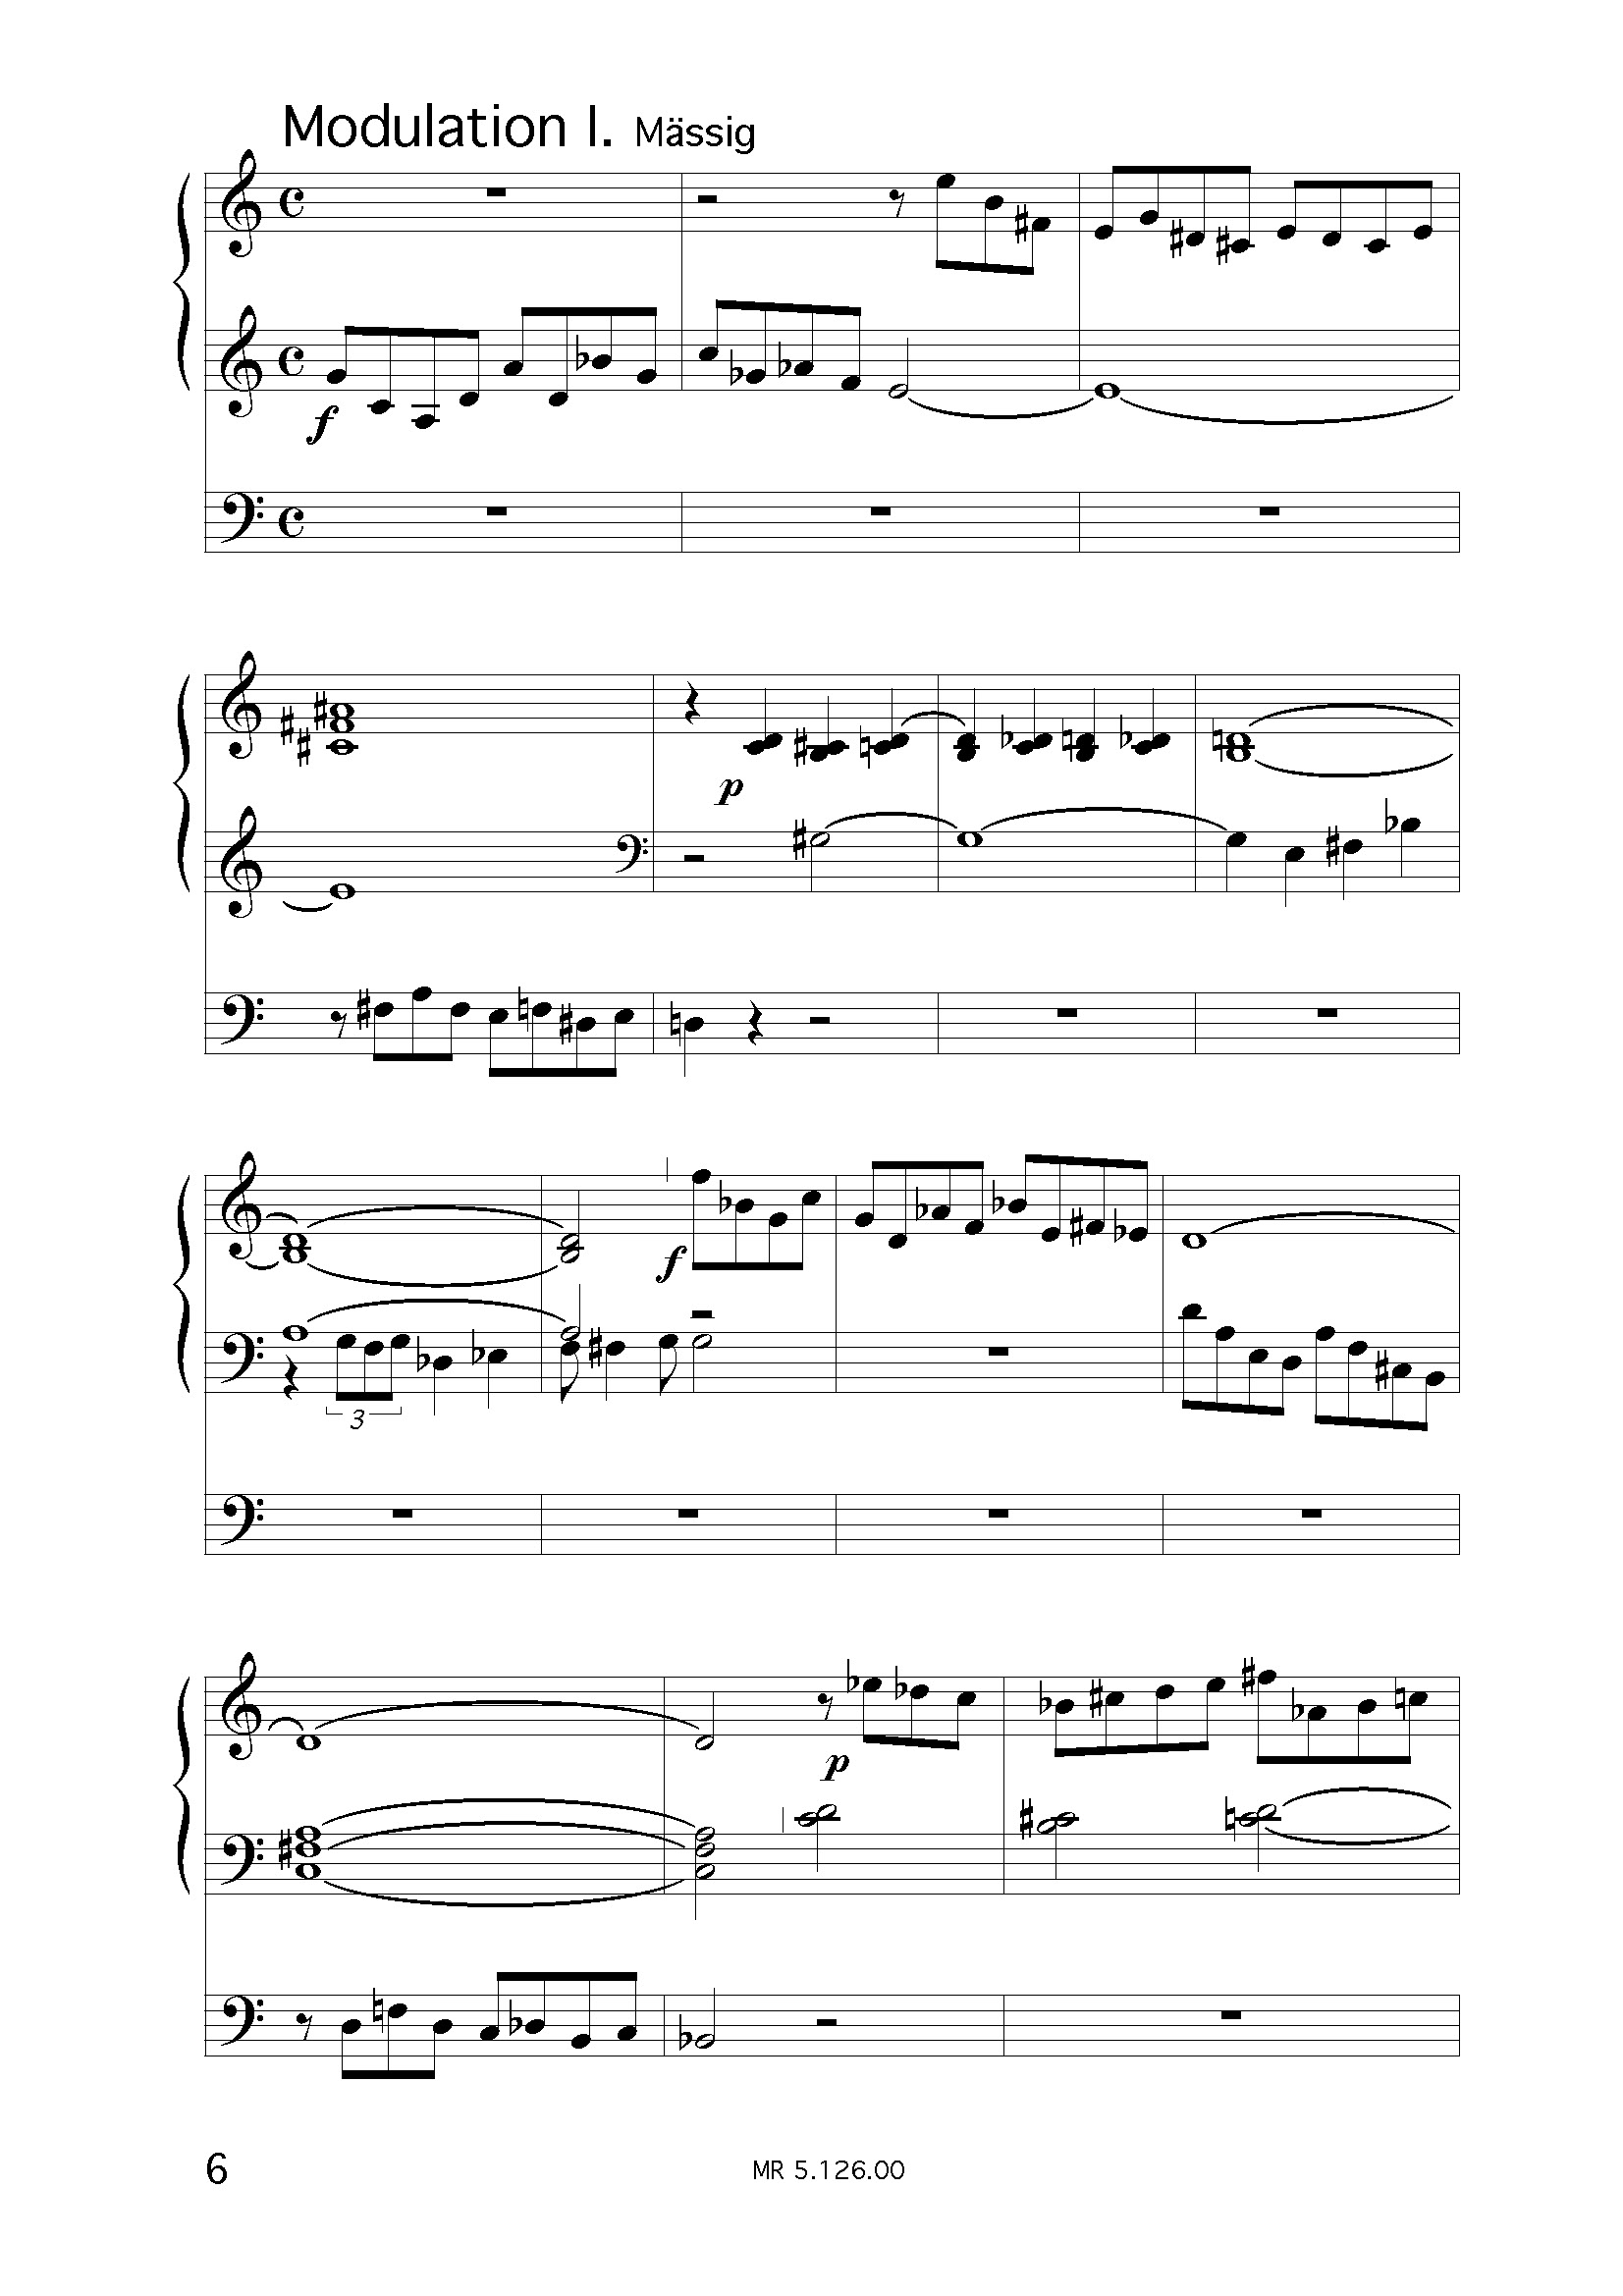 Concertino für Orgel